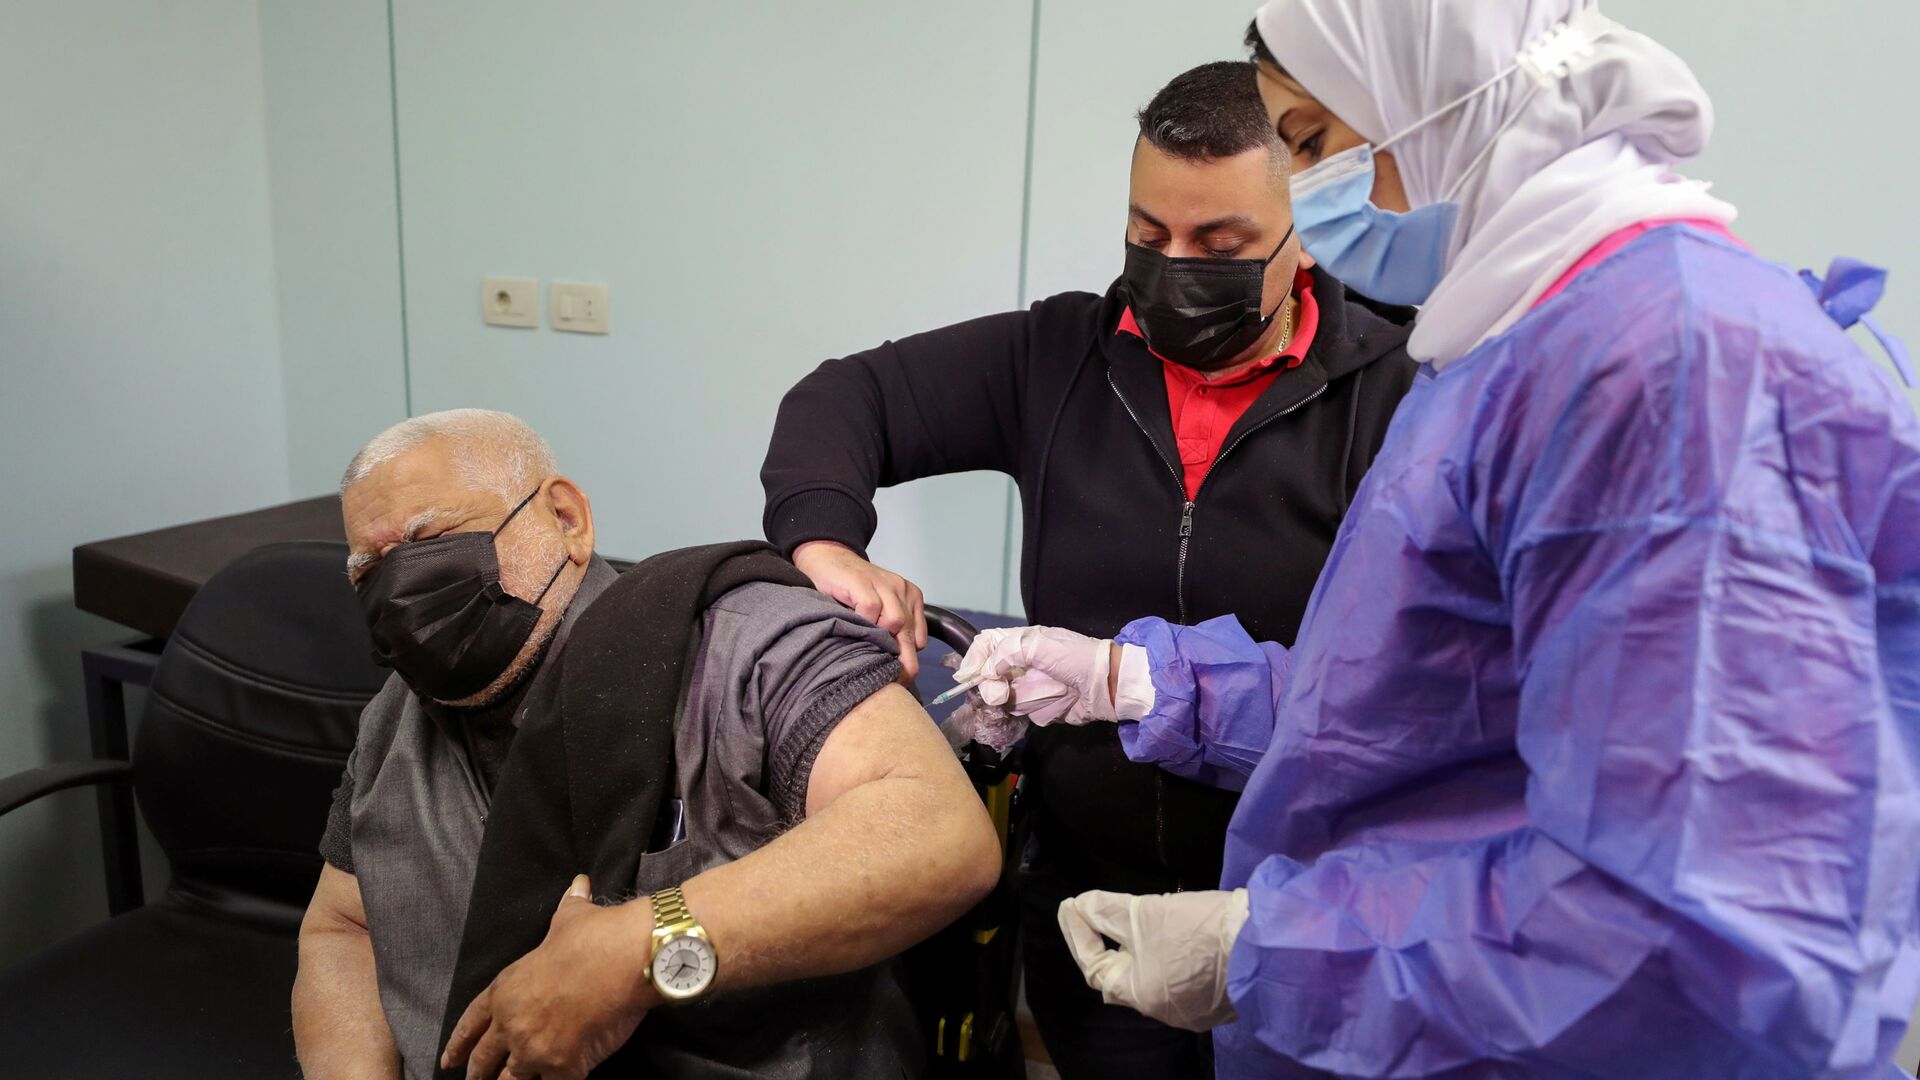  بدء تطعيم واسع النطاق في مصر ضد فيروس كورونا (كوفيد-19)، القاهرة، 4 مارس 2021 - سبوتنيك عربي, 1920, 12.09.2021